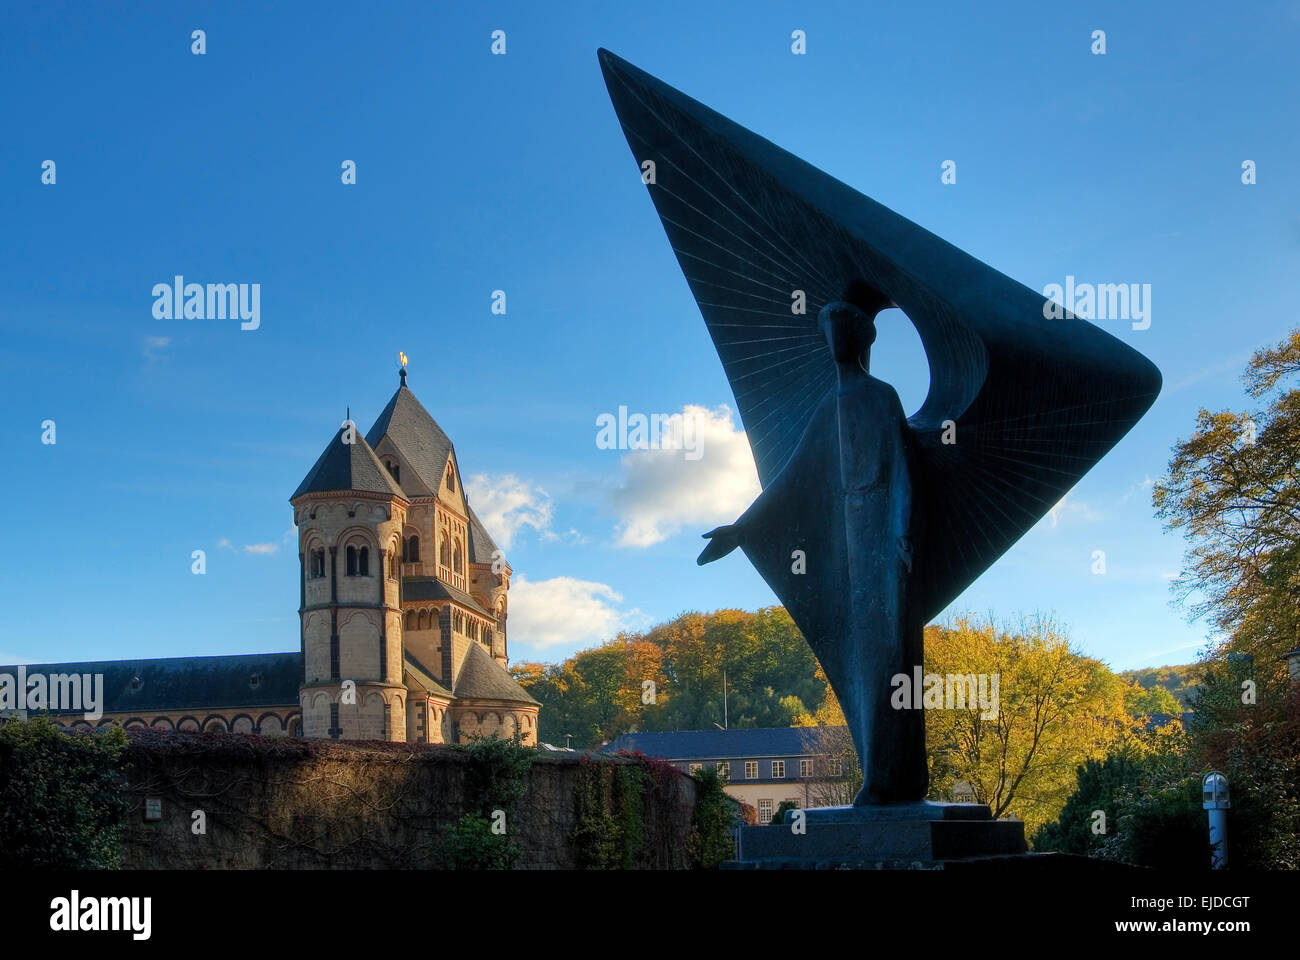 L'église abbatiale de la monastère bénédictin de Maria Laach, Allemagne, Finlande, Europe Banque D'Images